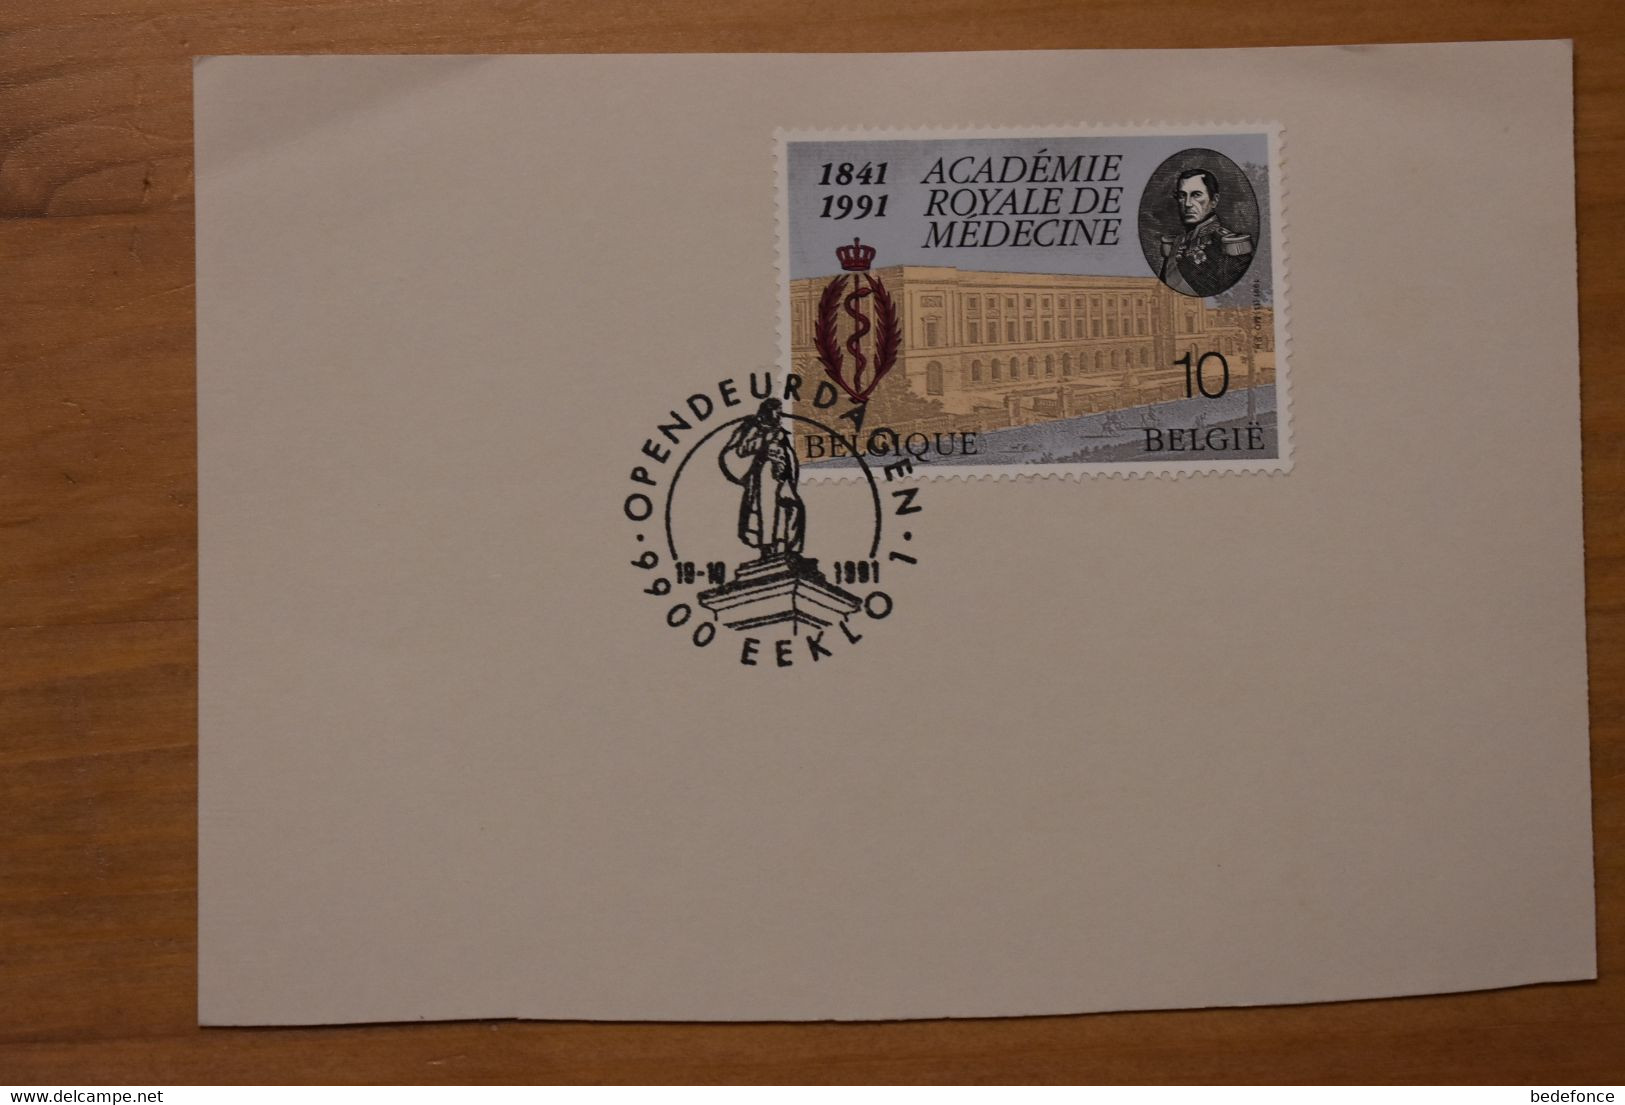 Carte Postale - Belgique - N° 2416 + Cachet Journée Porte Ouverte Eeklo - 19-10-1991 - Bureaux De Passage